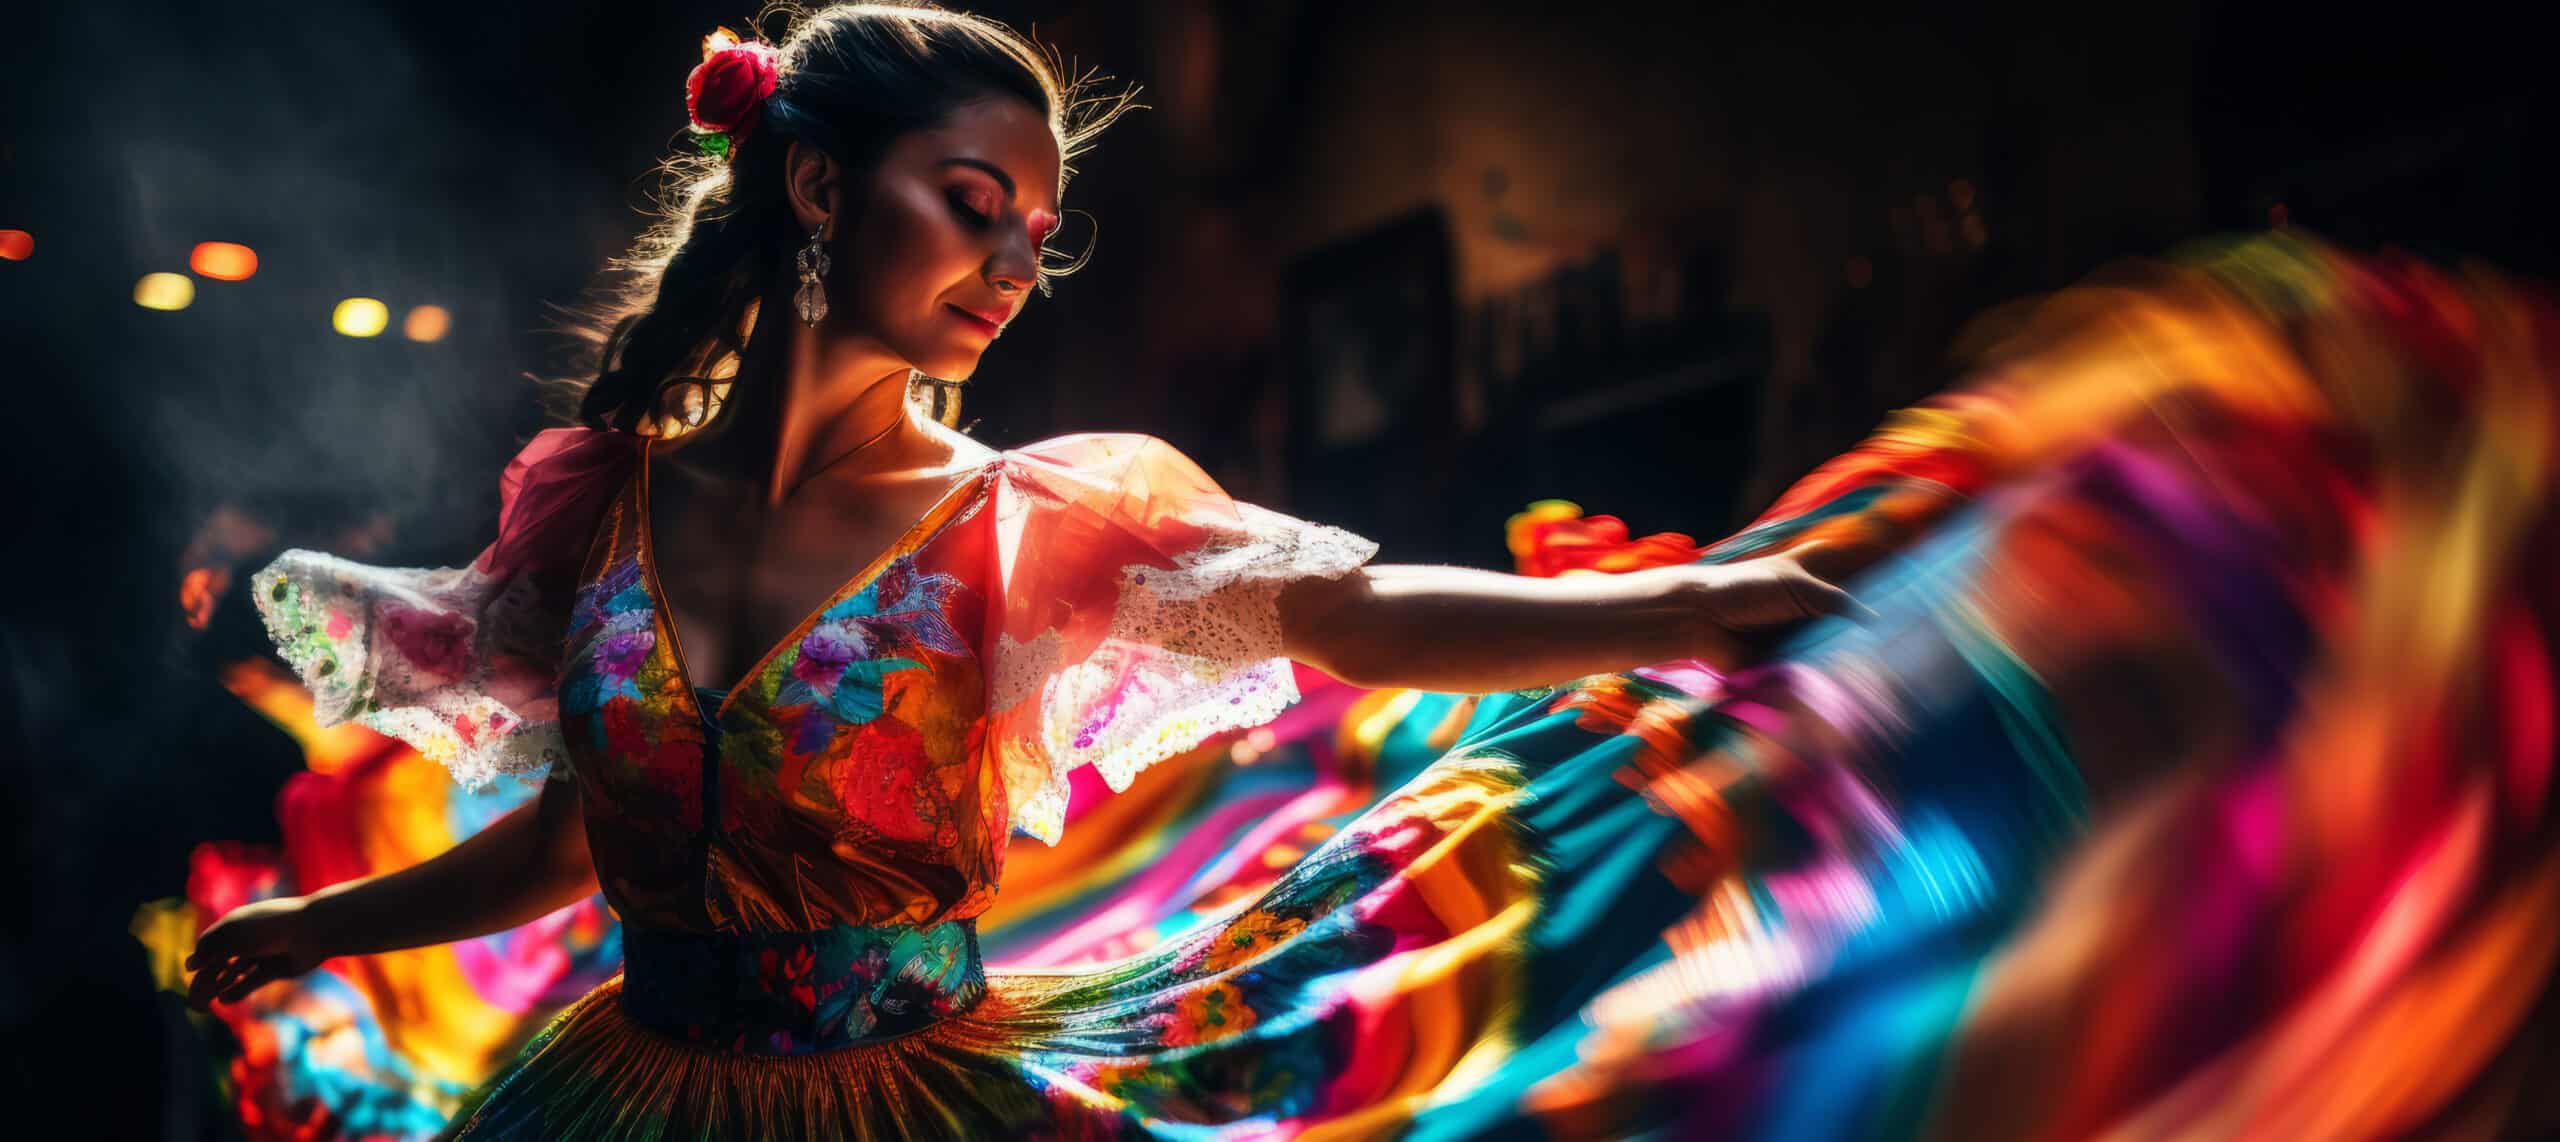 Hermosa joven con un vestido colorido bailando flamenco